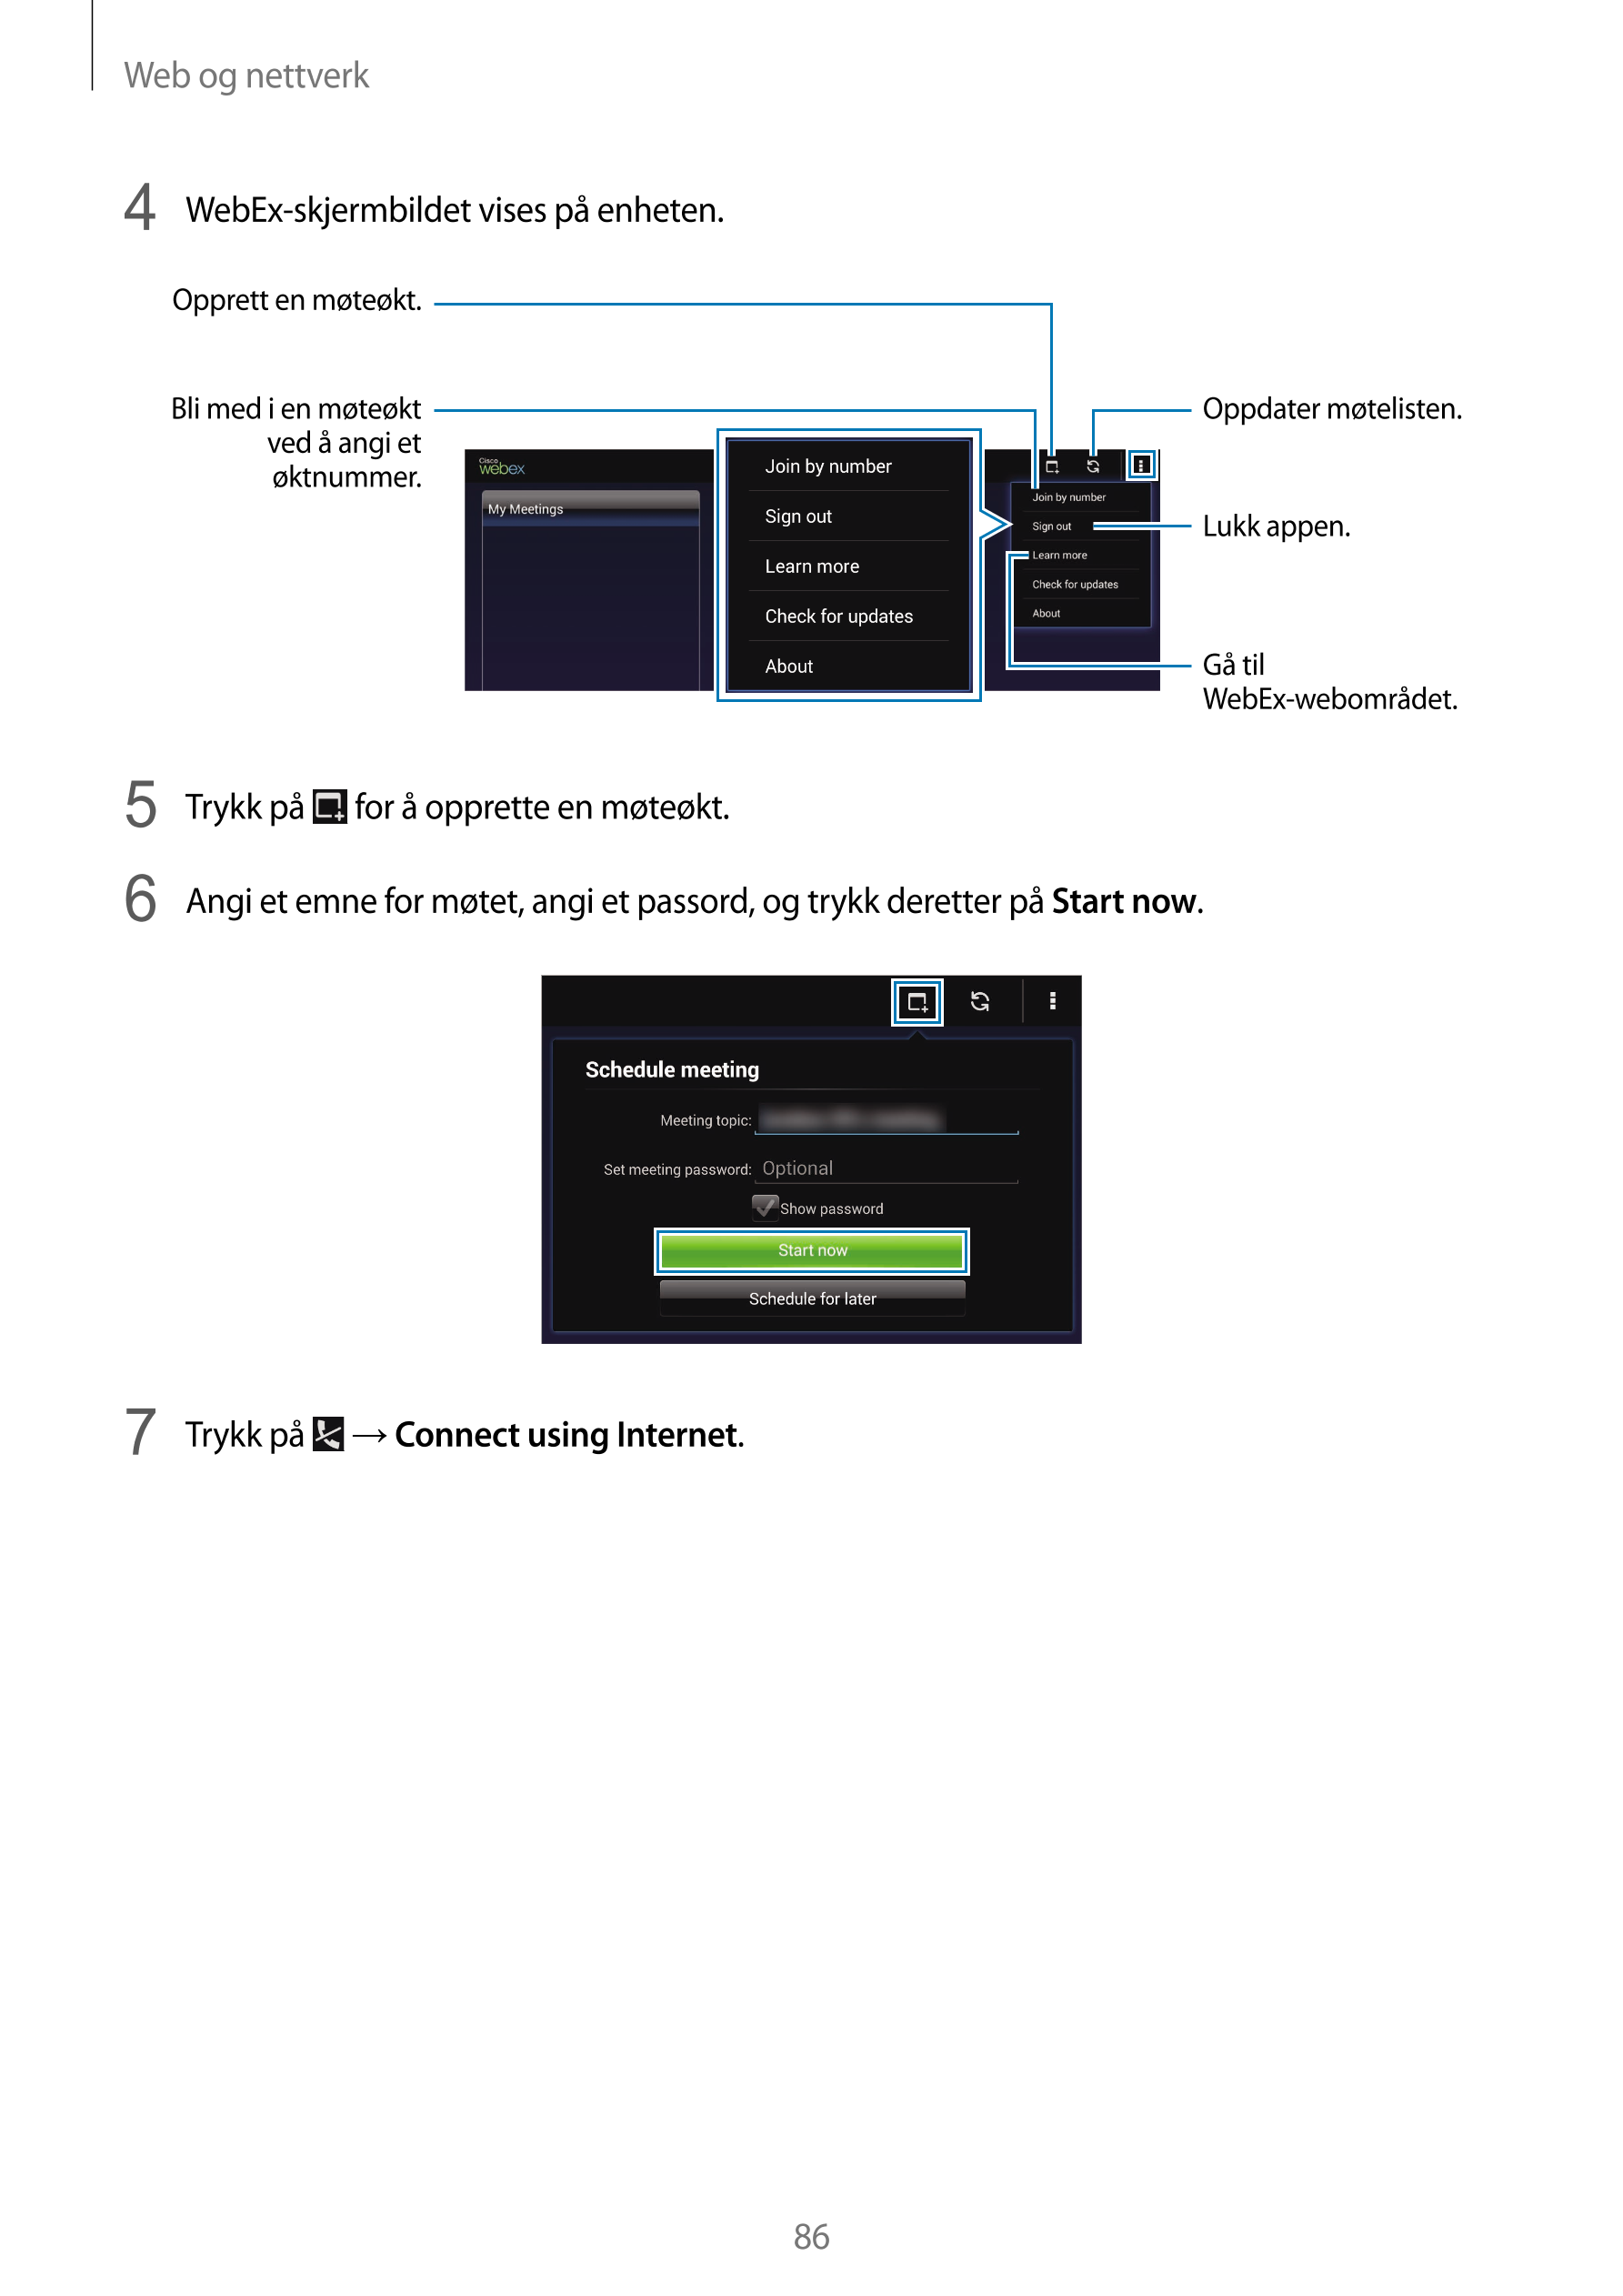 Web og nettverk
4  WebEx-skjermbildet vises på enheten.
Opprett en møteøkt.
Bli med i en møteøkt  Oppdater møtelisten.
ved å ang